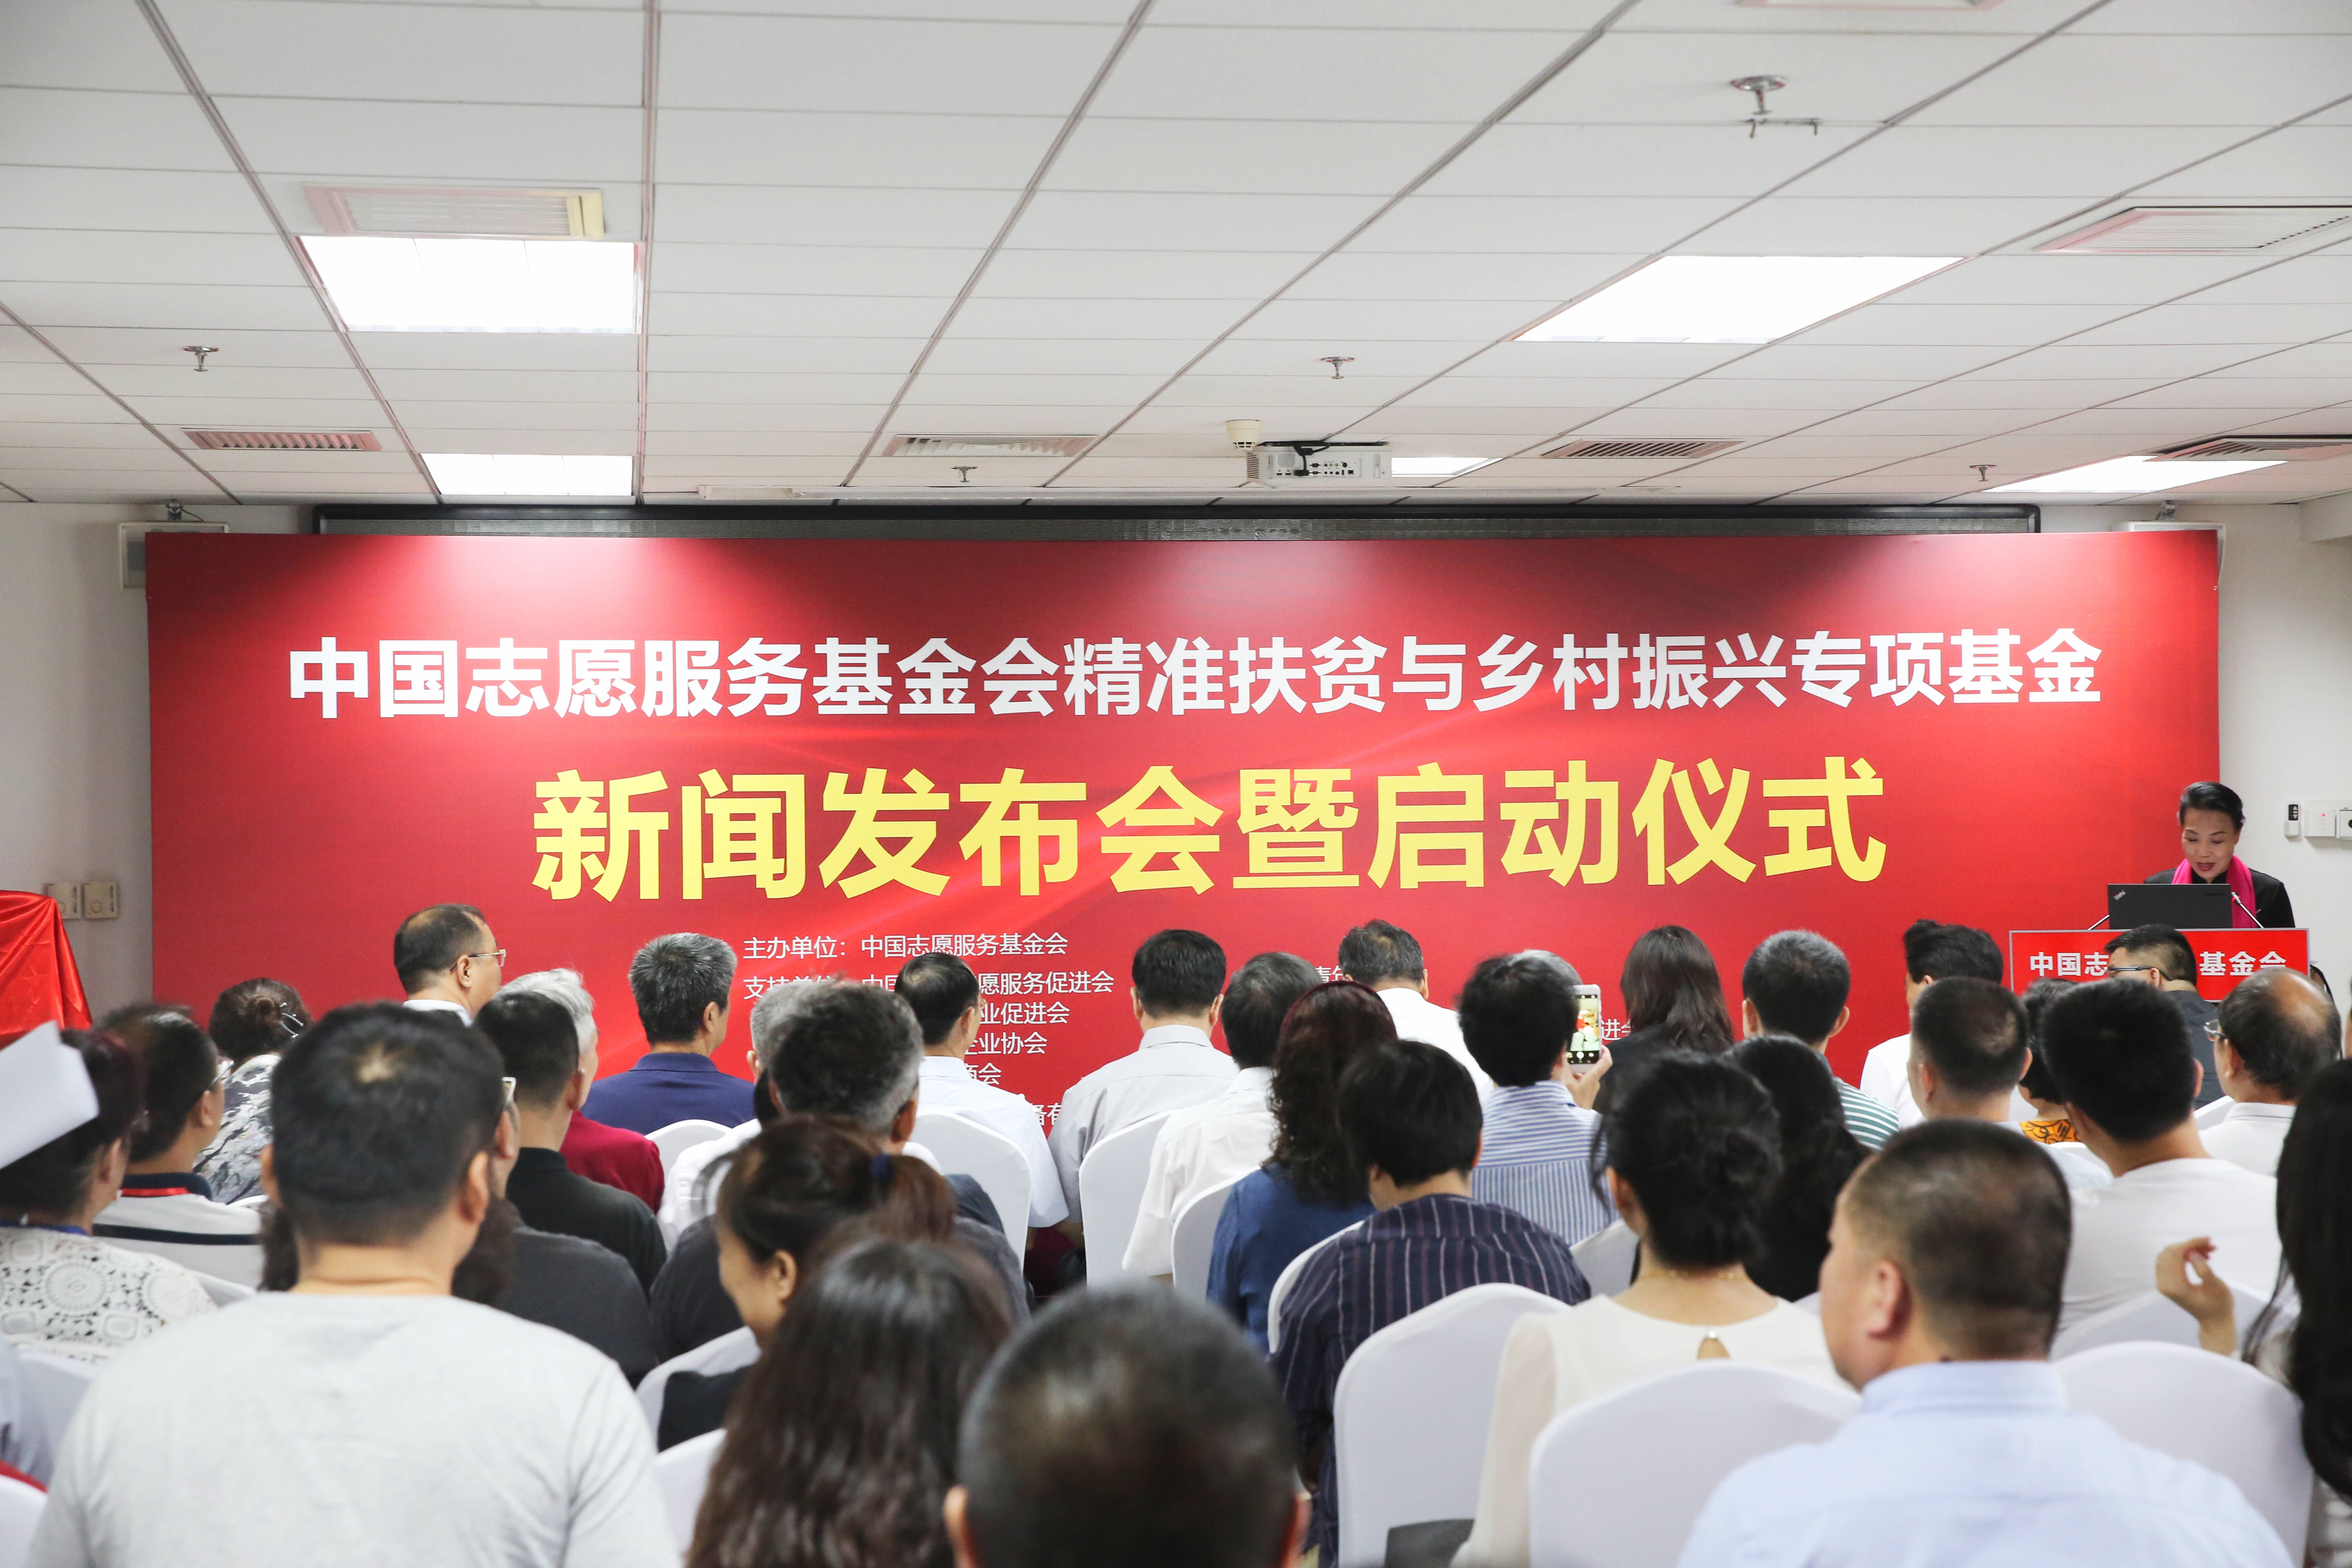 中国志愿服务基金会精准扶贫与乡村振兴专项基金新闻发布会暨启动仪式在京举行